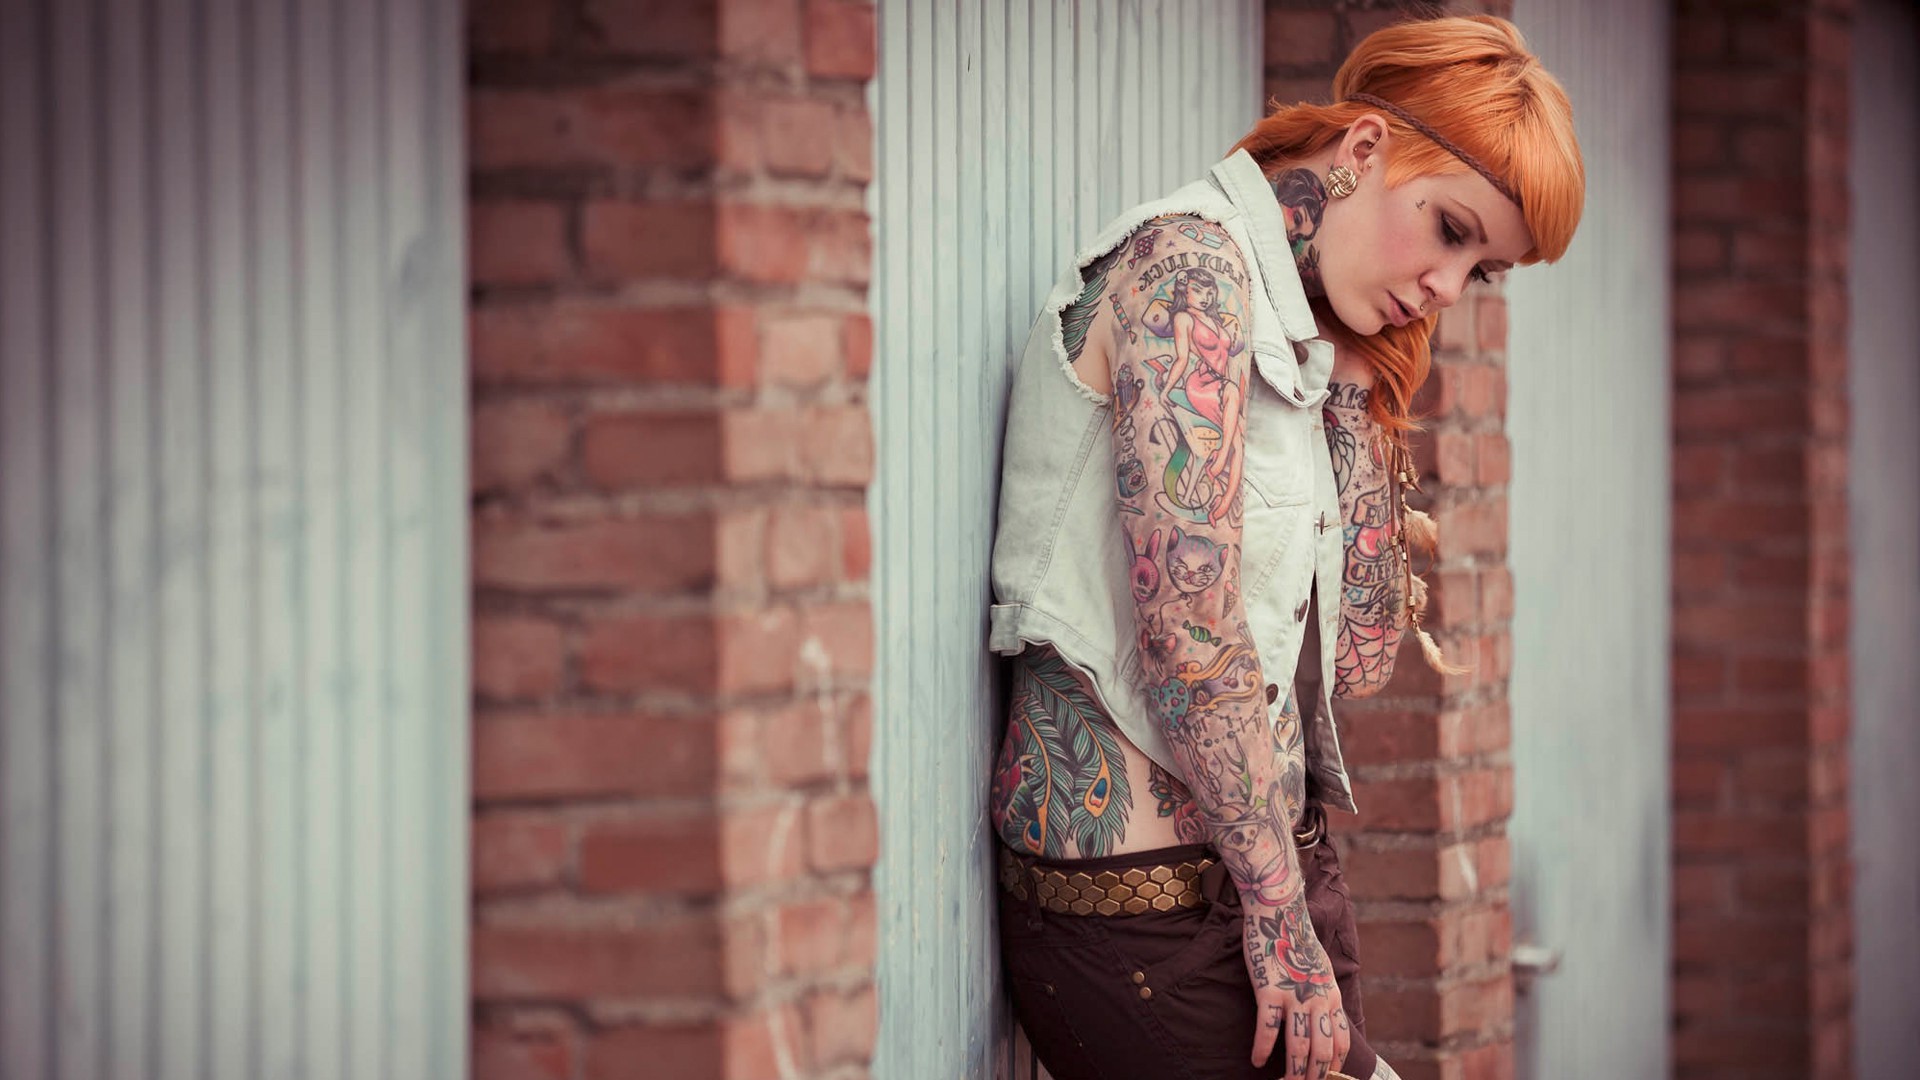 women long hair model tattoo redhead headband jeans piercing garages women outdoors Wallpaper